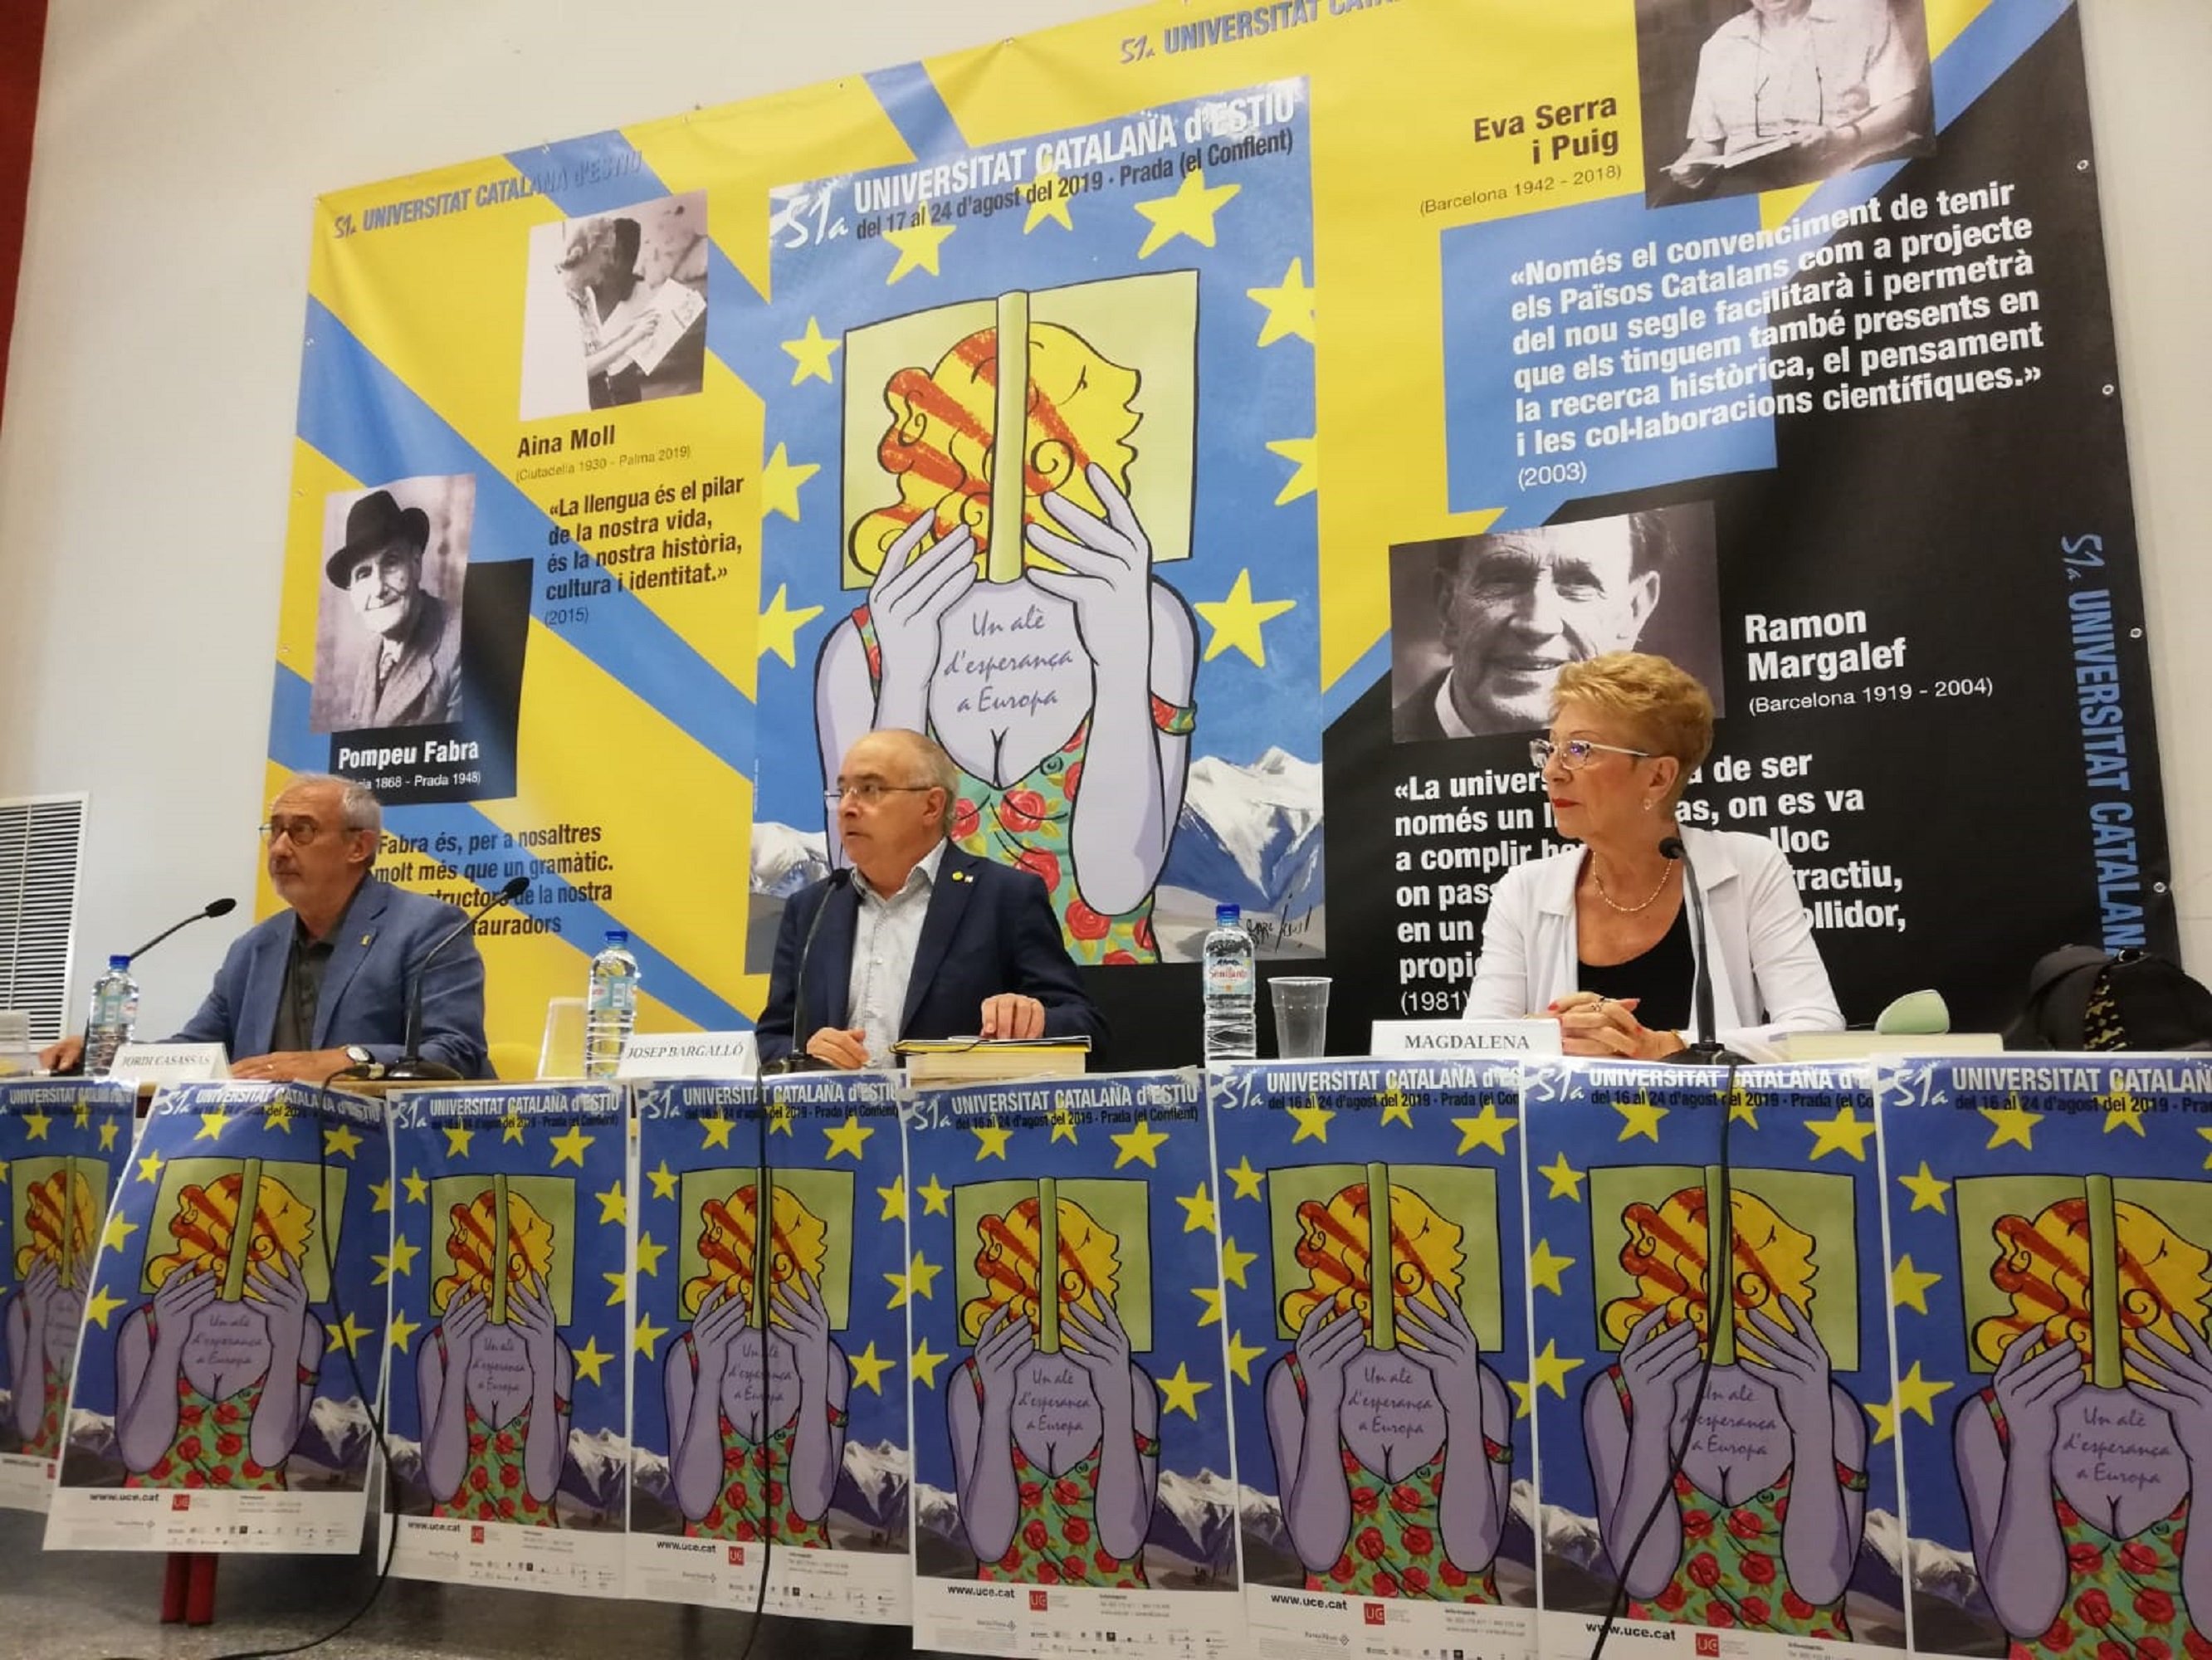 Bargalló defiende la "confrontación democrática" para conseguir finalmente diálogo